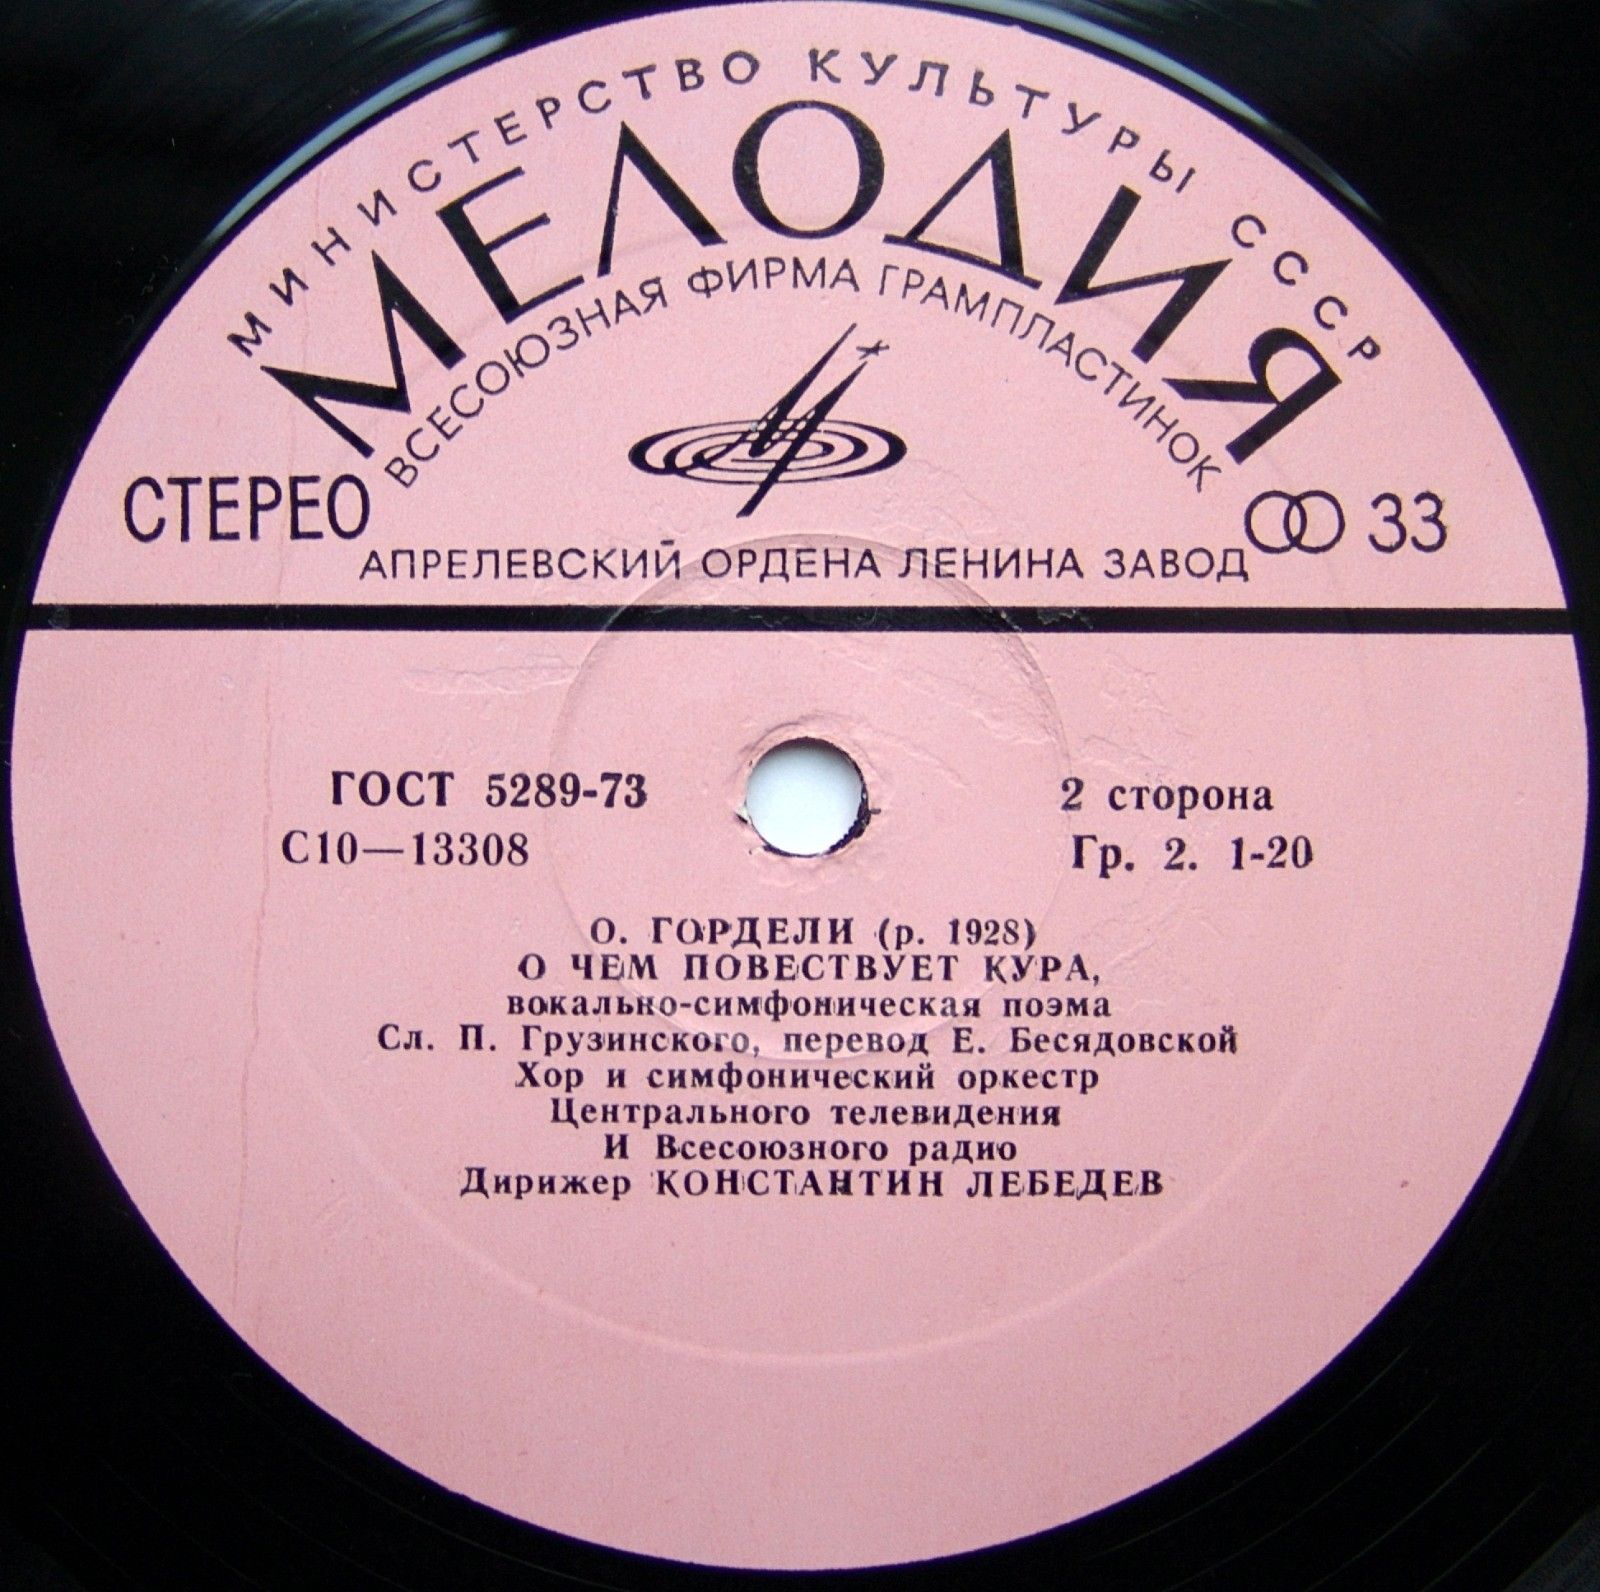 Отар ГОРДЕЛИ (1928). Симфонические произведения